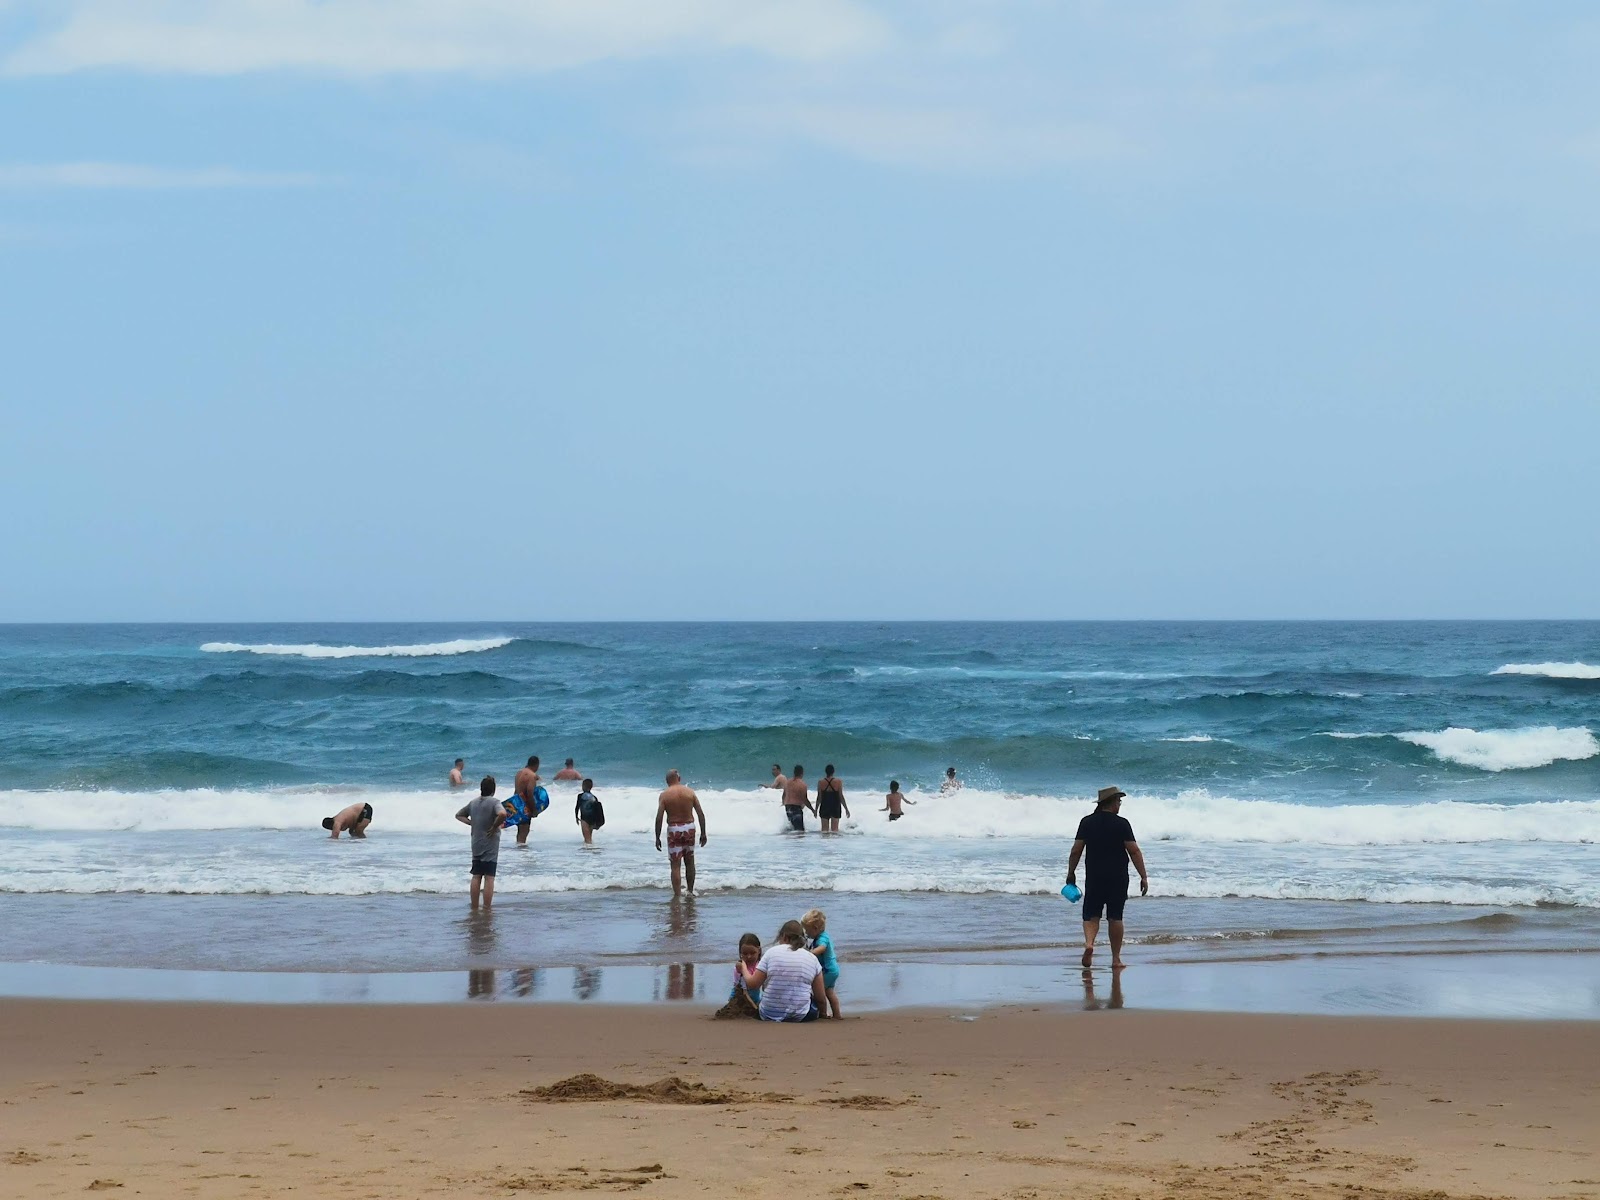 Zdjęcie Cape Vidal beach - popularne miejsce wśród znawców relaksu